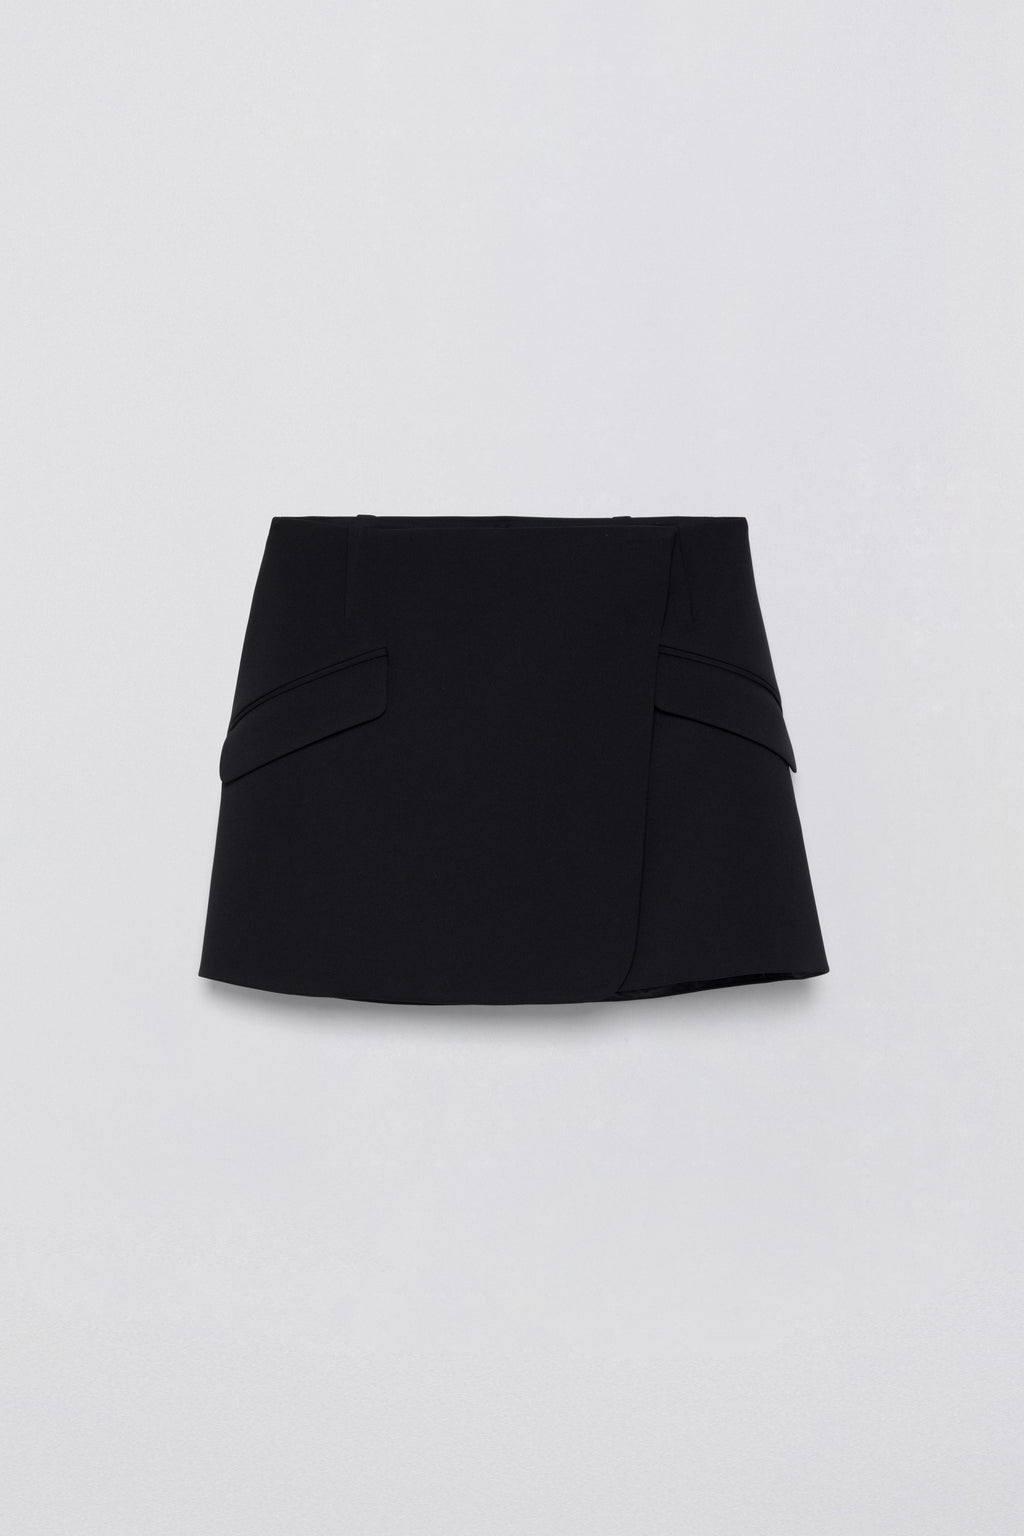 Payton Skirt – SIMKHAI